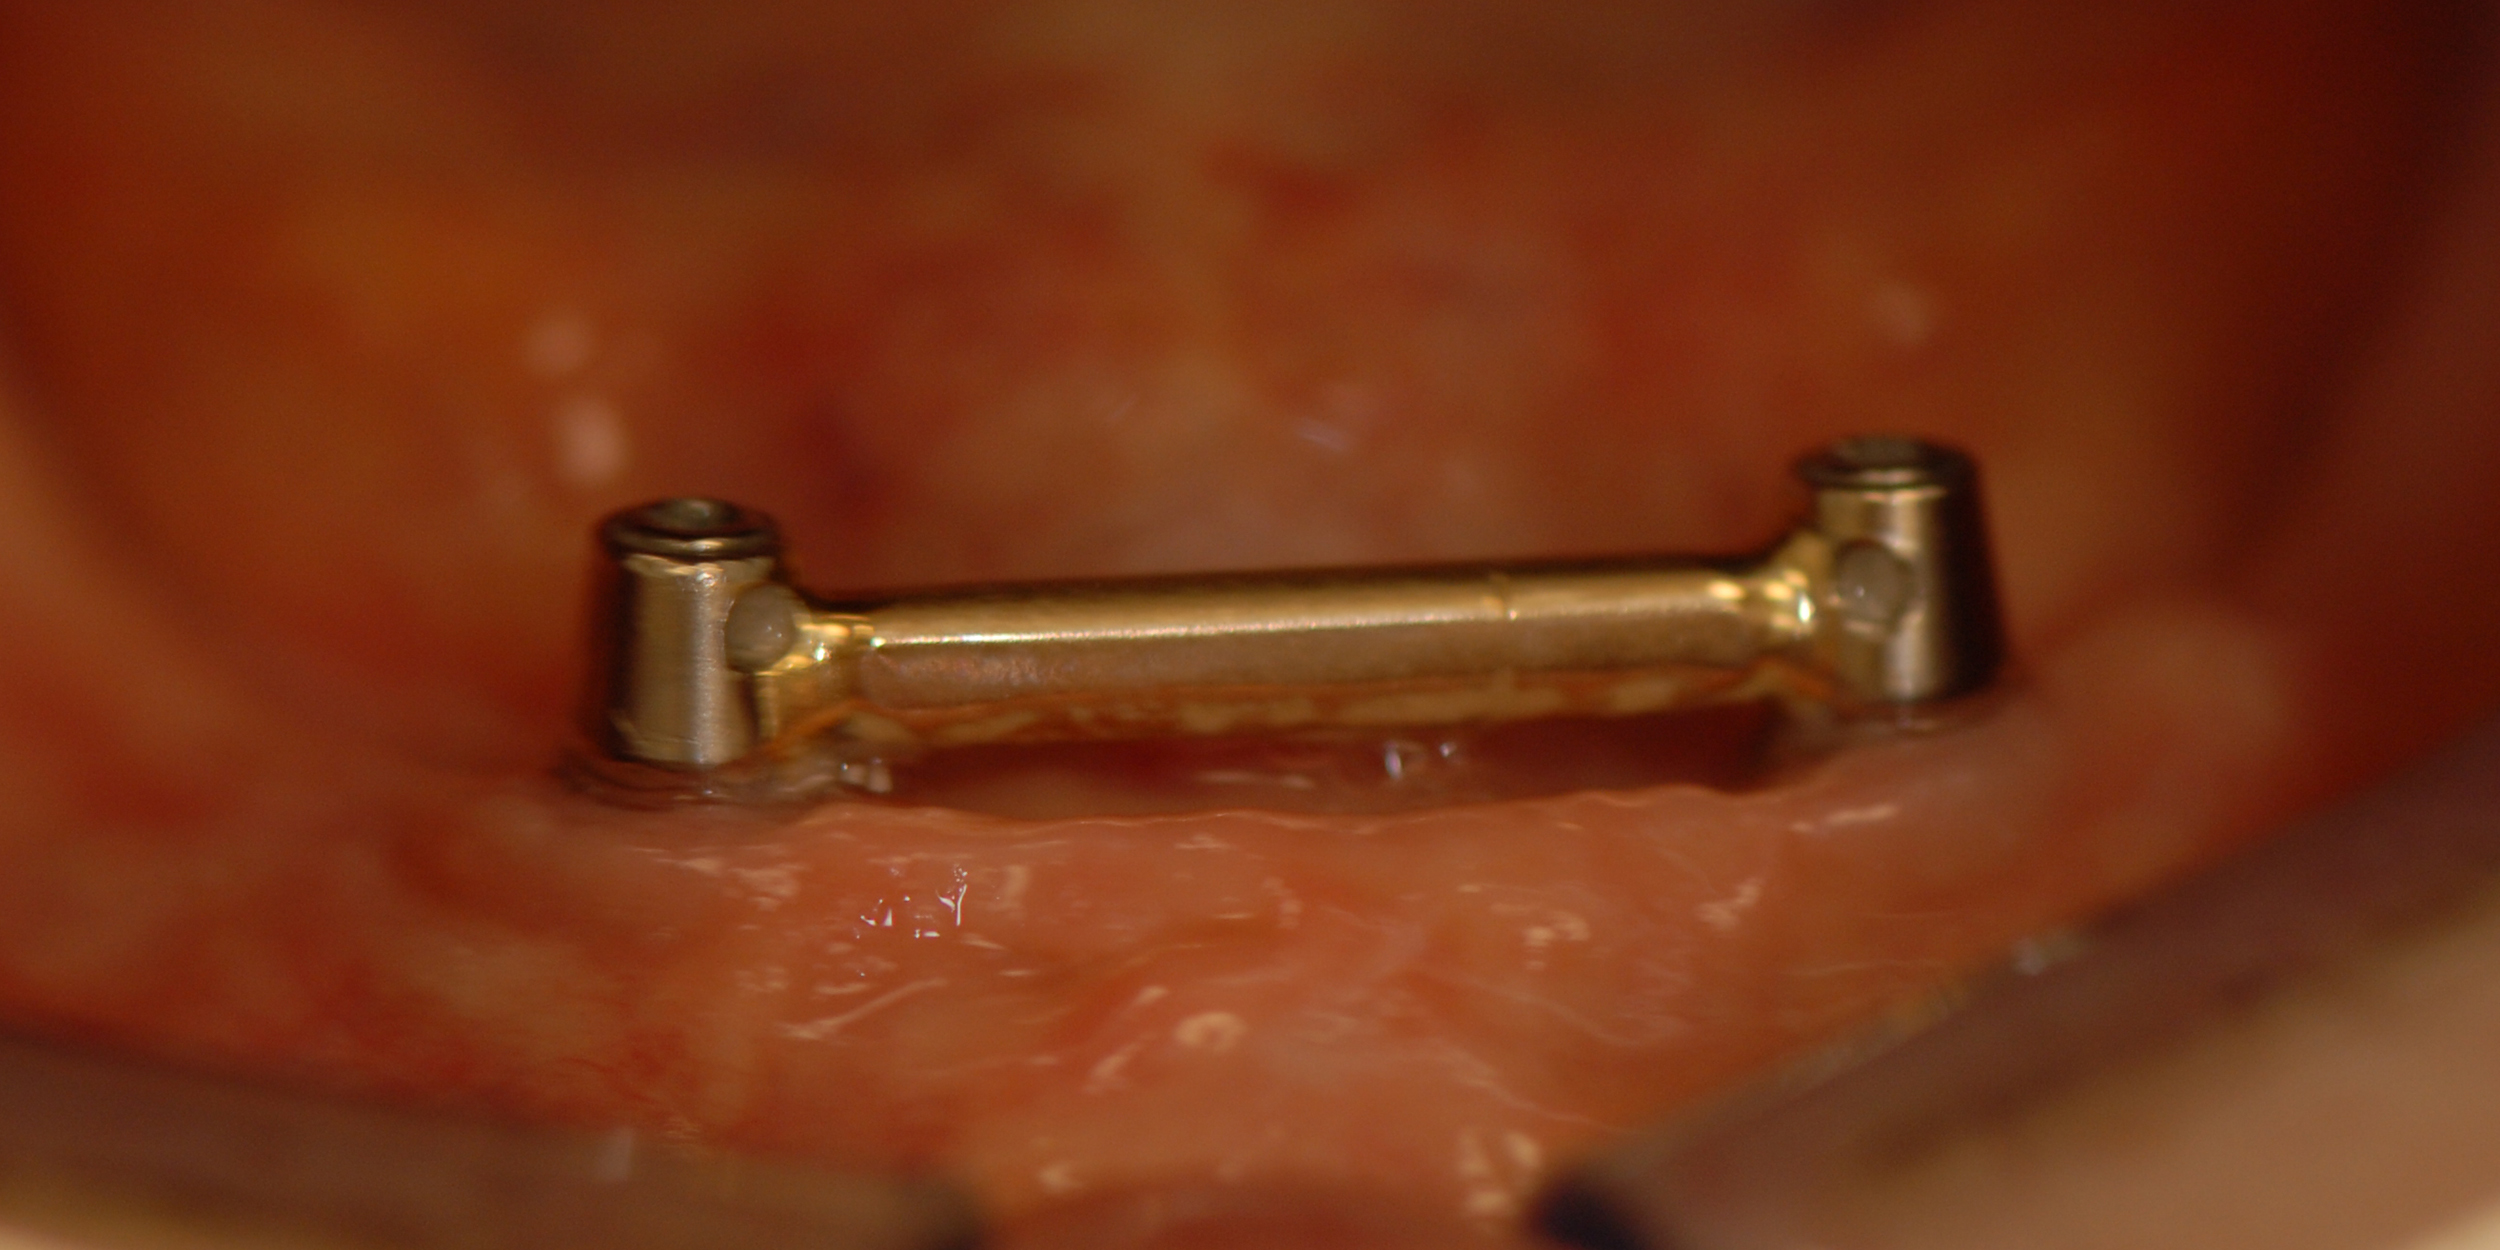 Gezondheidsaspecten van patiënten die een overkappingsprothese op implantaten ontvangen: een cross-sectioneel onderzoek